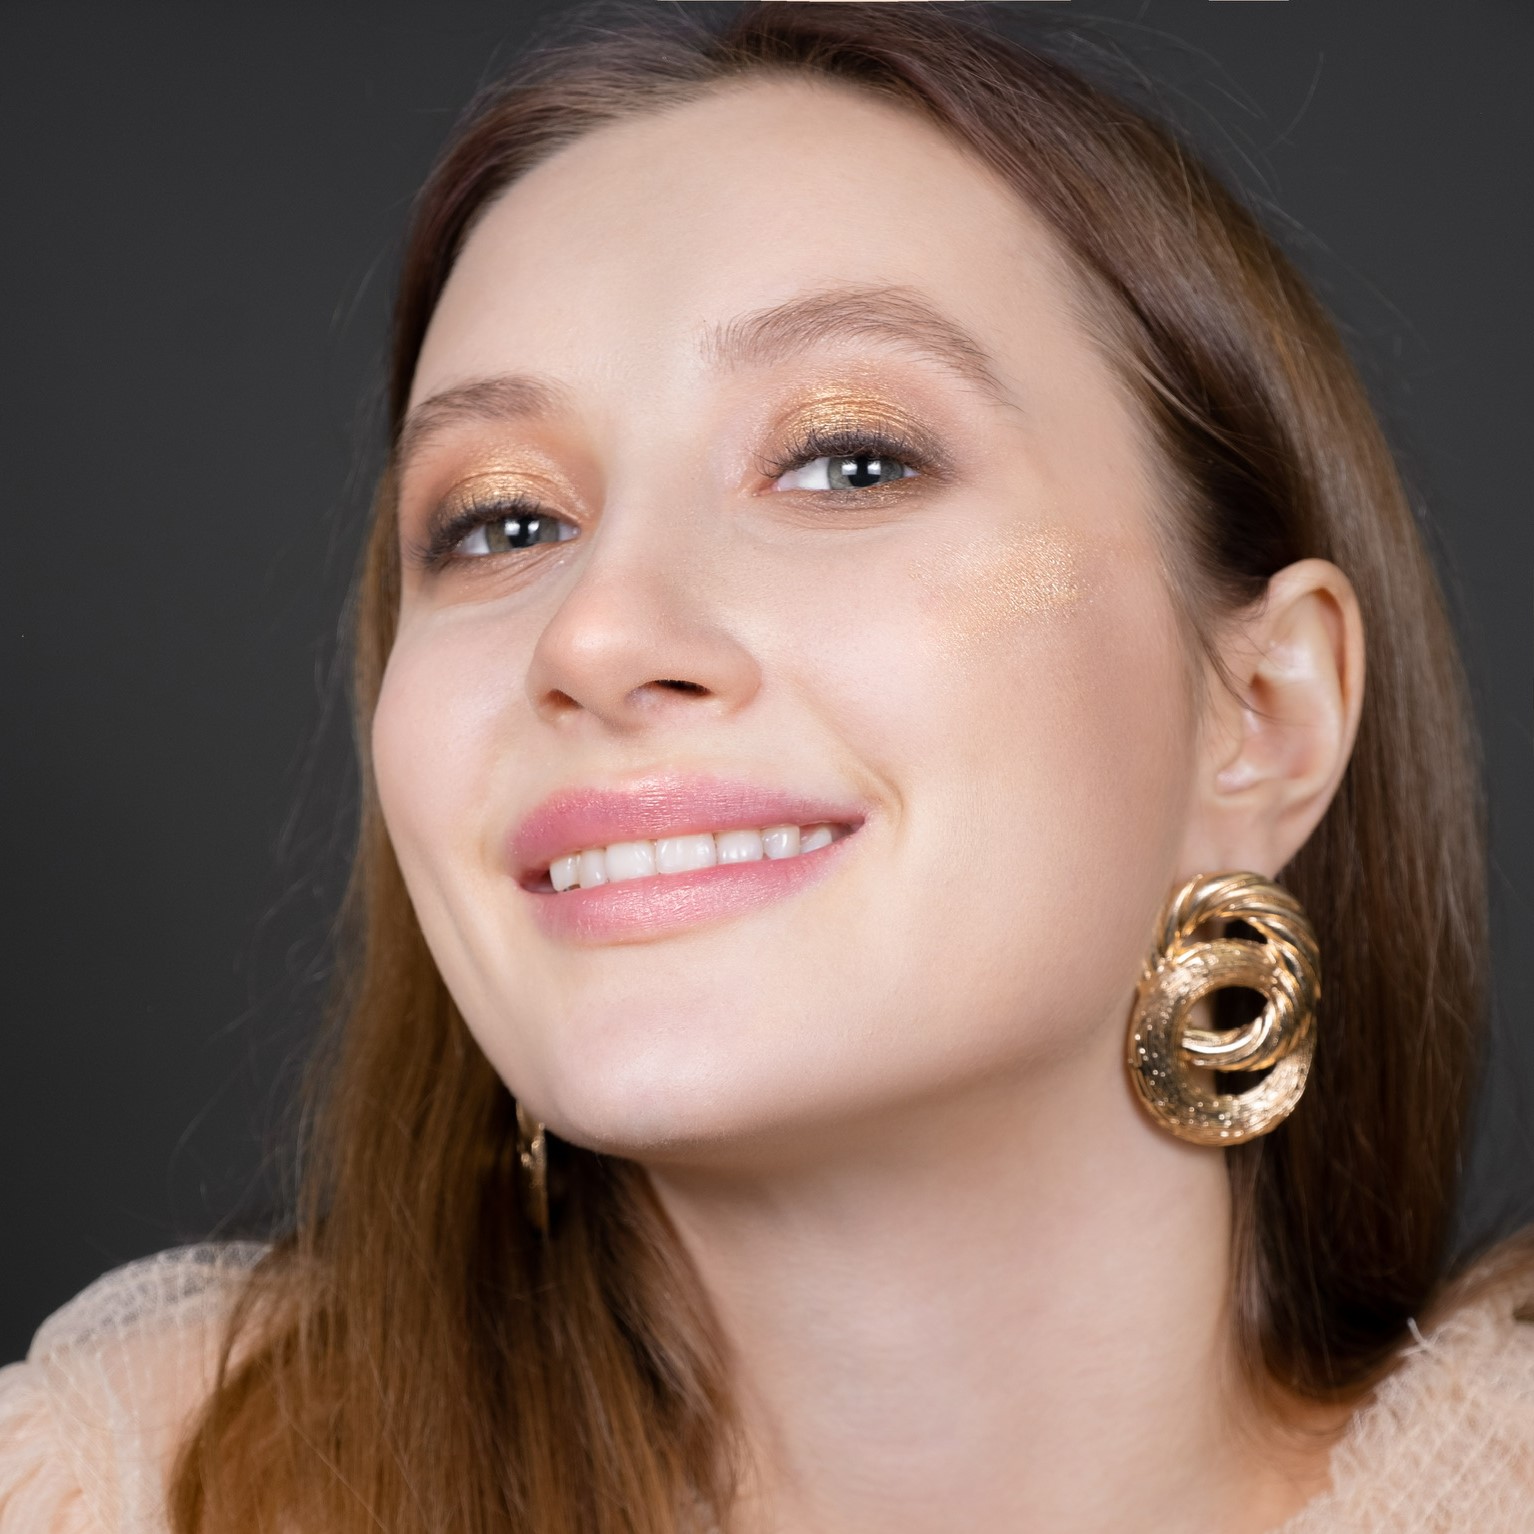 Челябинка в 19 лет запустила марку минеральной косметики, которую теперь покупают во всем мире